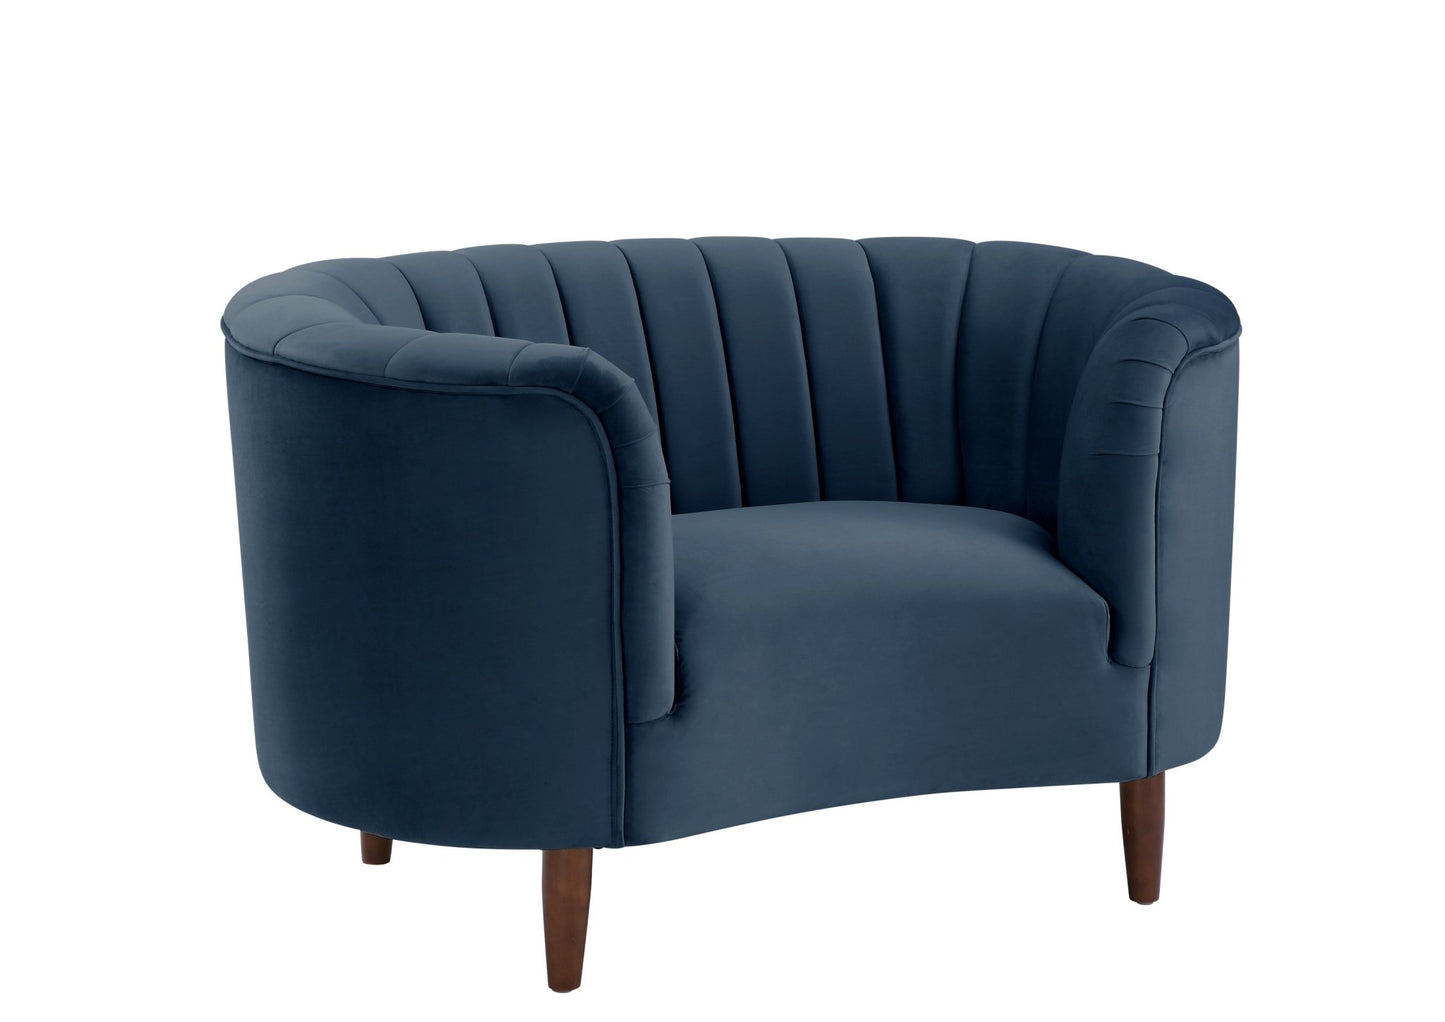 ACME Millephri Chair in Blue Velvet LV00171 - Groovy Boardz